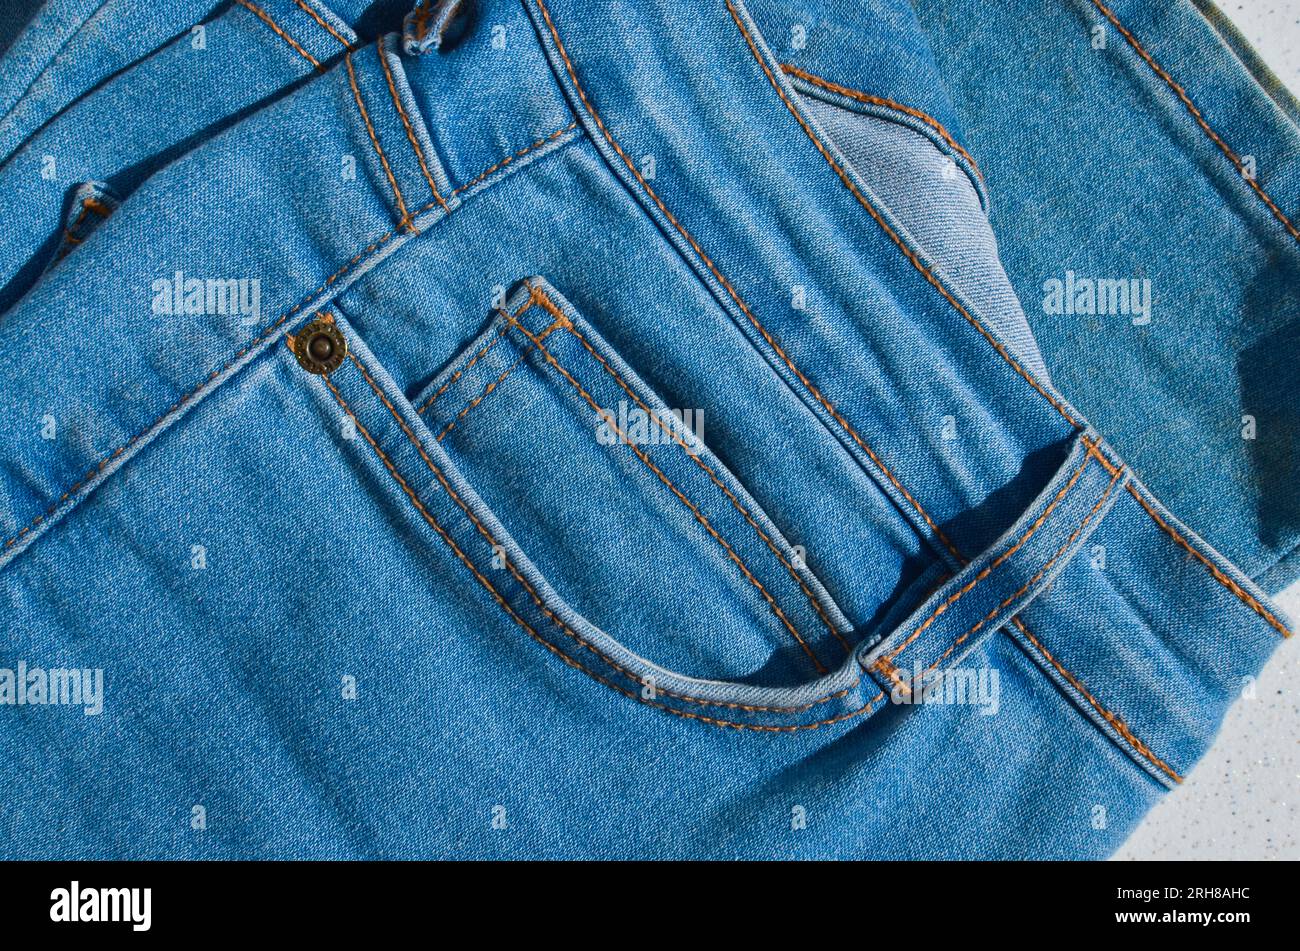 Dettaglio ravvicinato della cucitura di un paio di jeans, evidenziando la resistenza e la durata delle linee. Ideale per progetti legati alla moda e all'appar Foto Stock